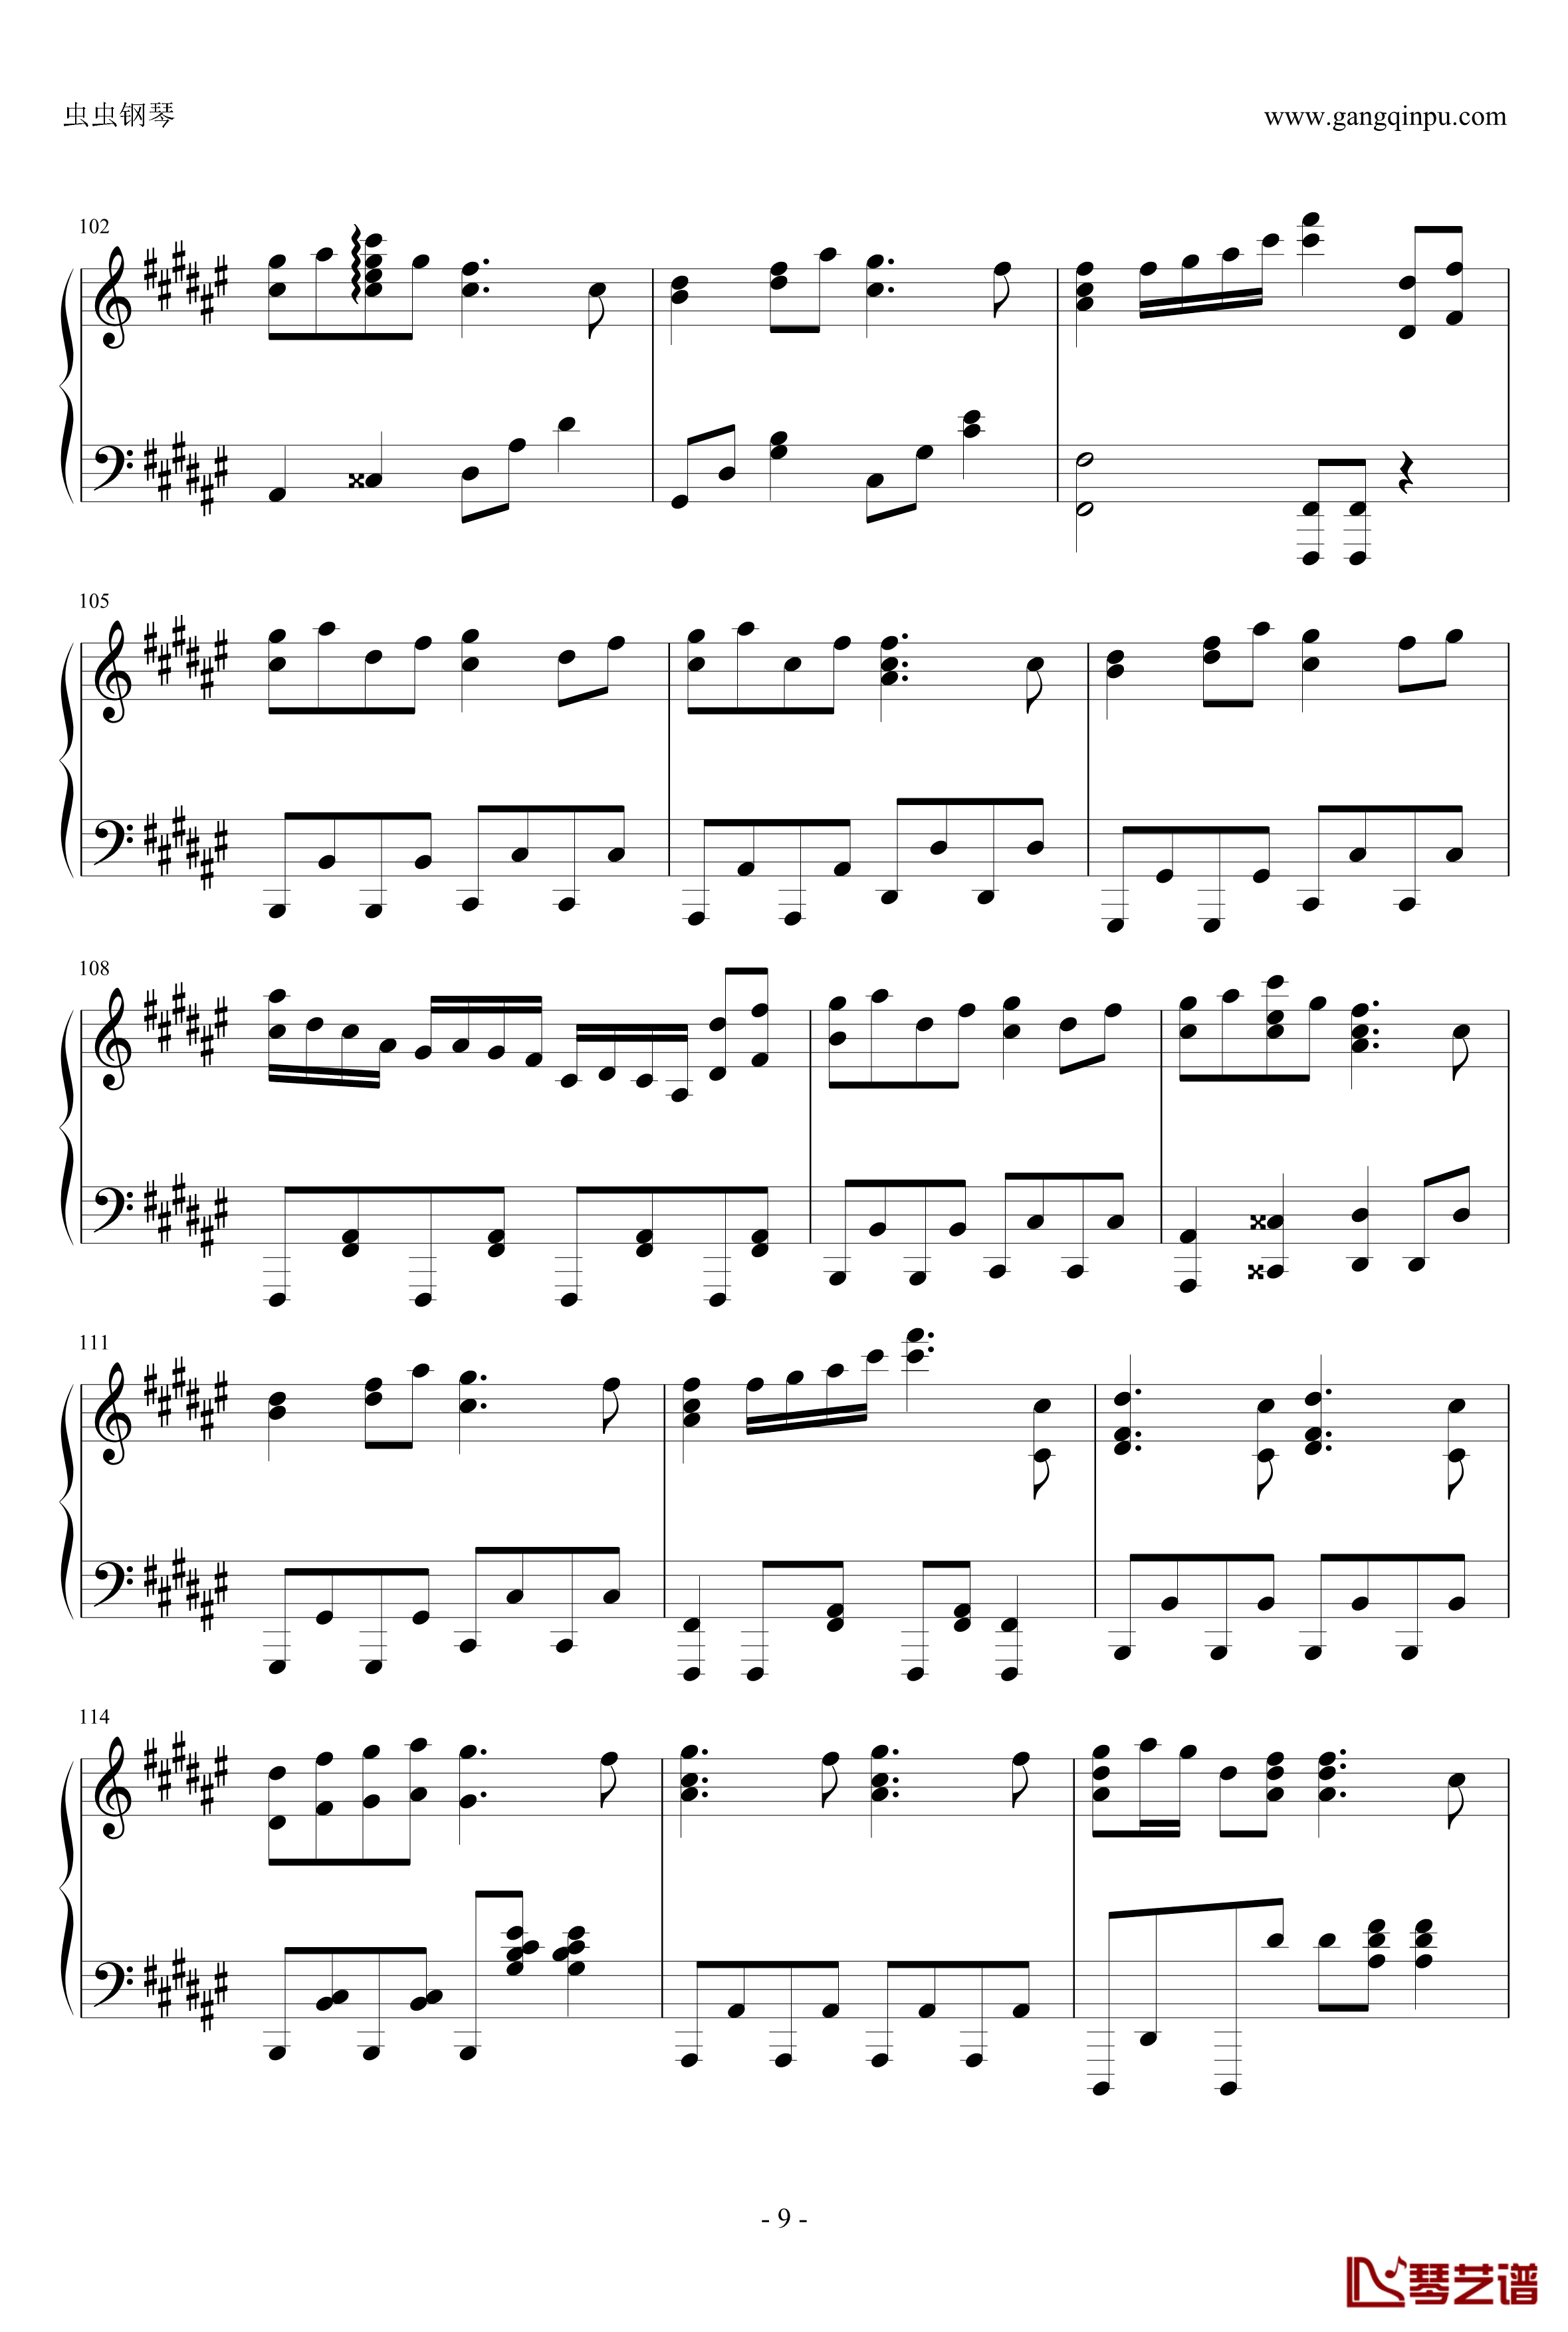 白金迪斯科钢琴谱-伪物语9